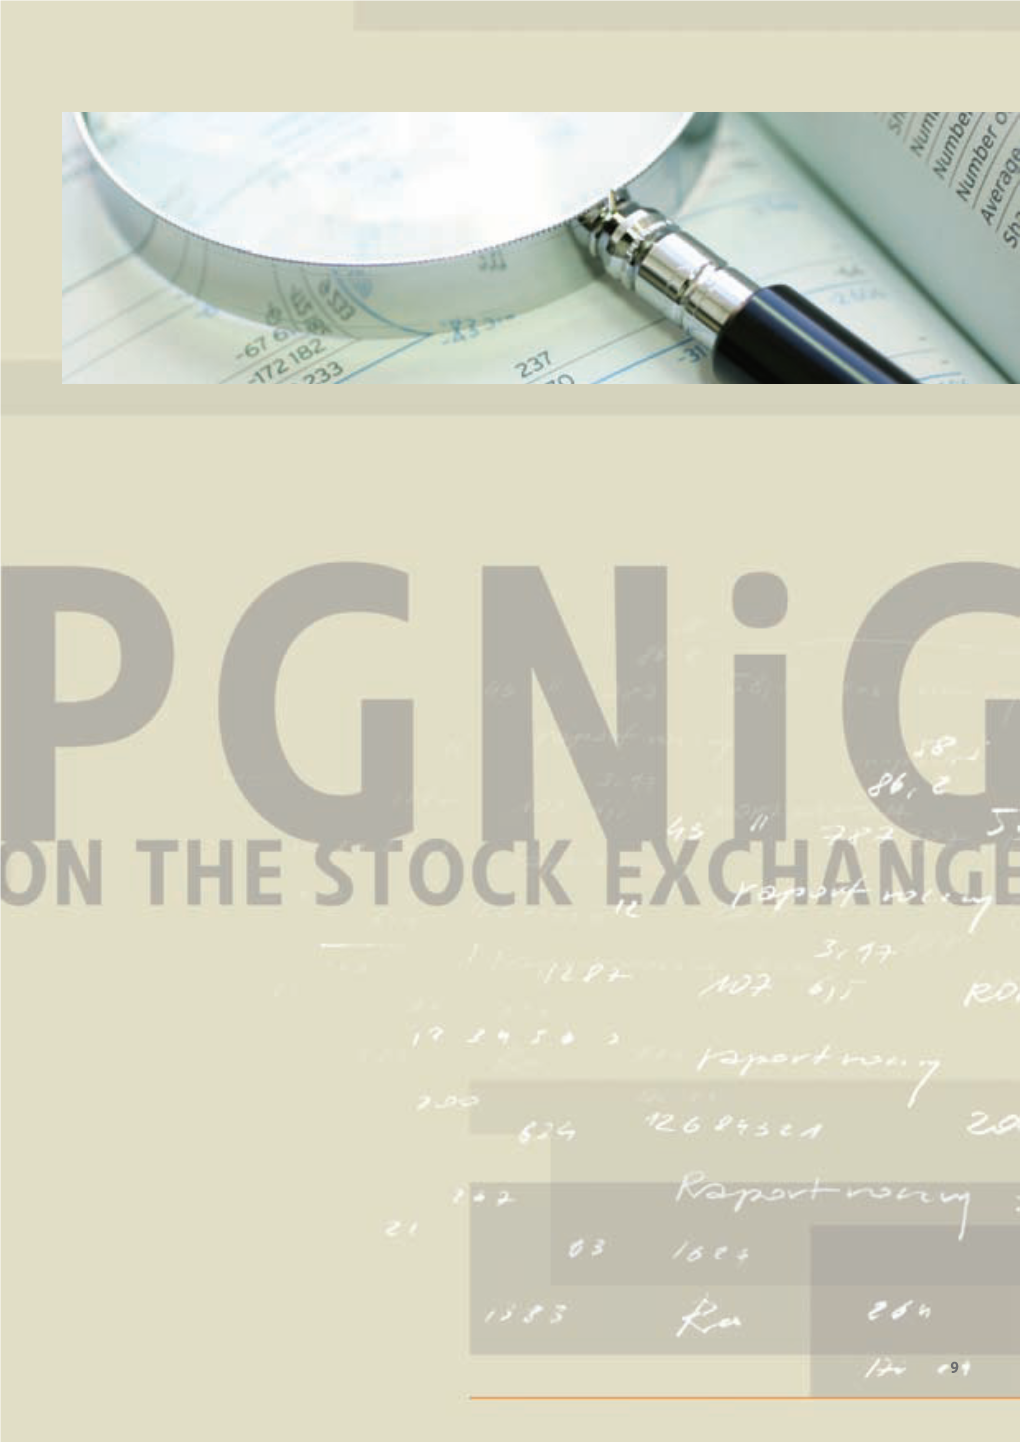 Iii. Pgnig on the Stock Exchange